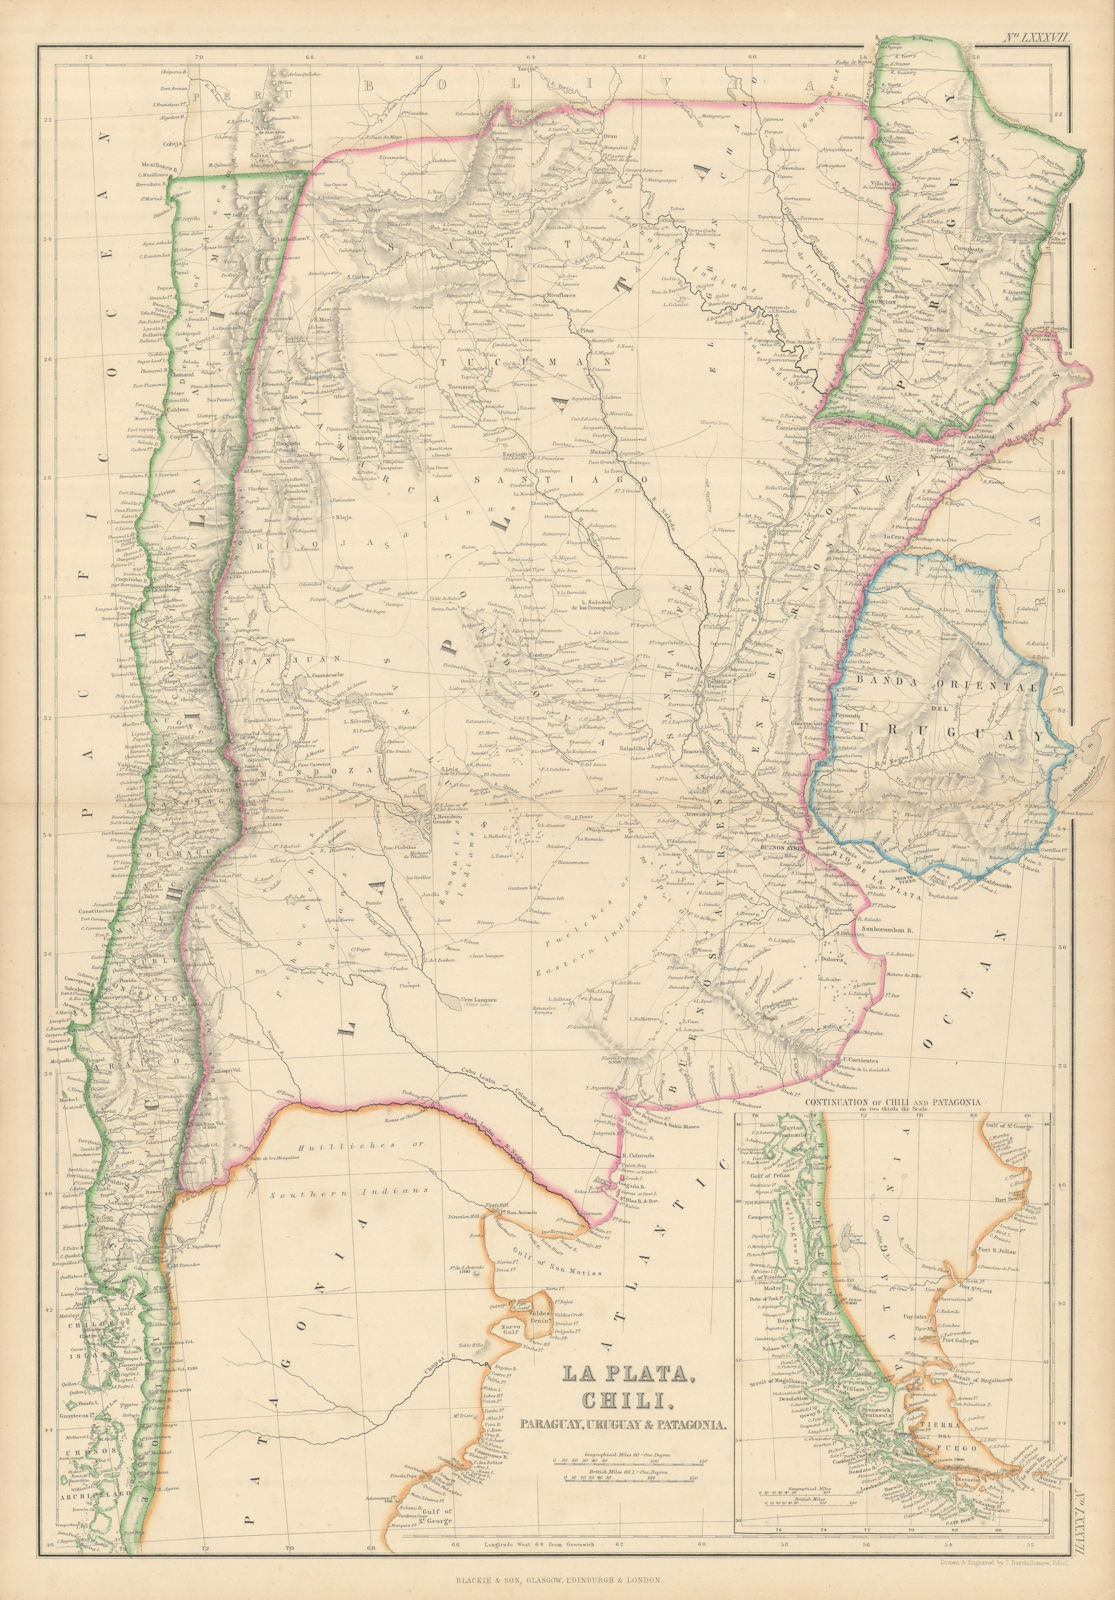 La Plata, Chili, Paraguay, Uruguay… Argentina Chile. BARTHOLOMEW 1860 old map